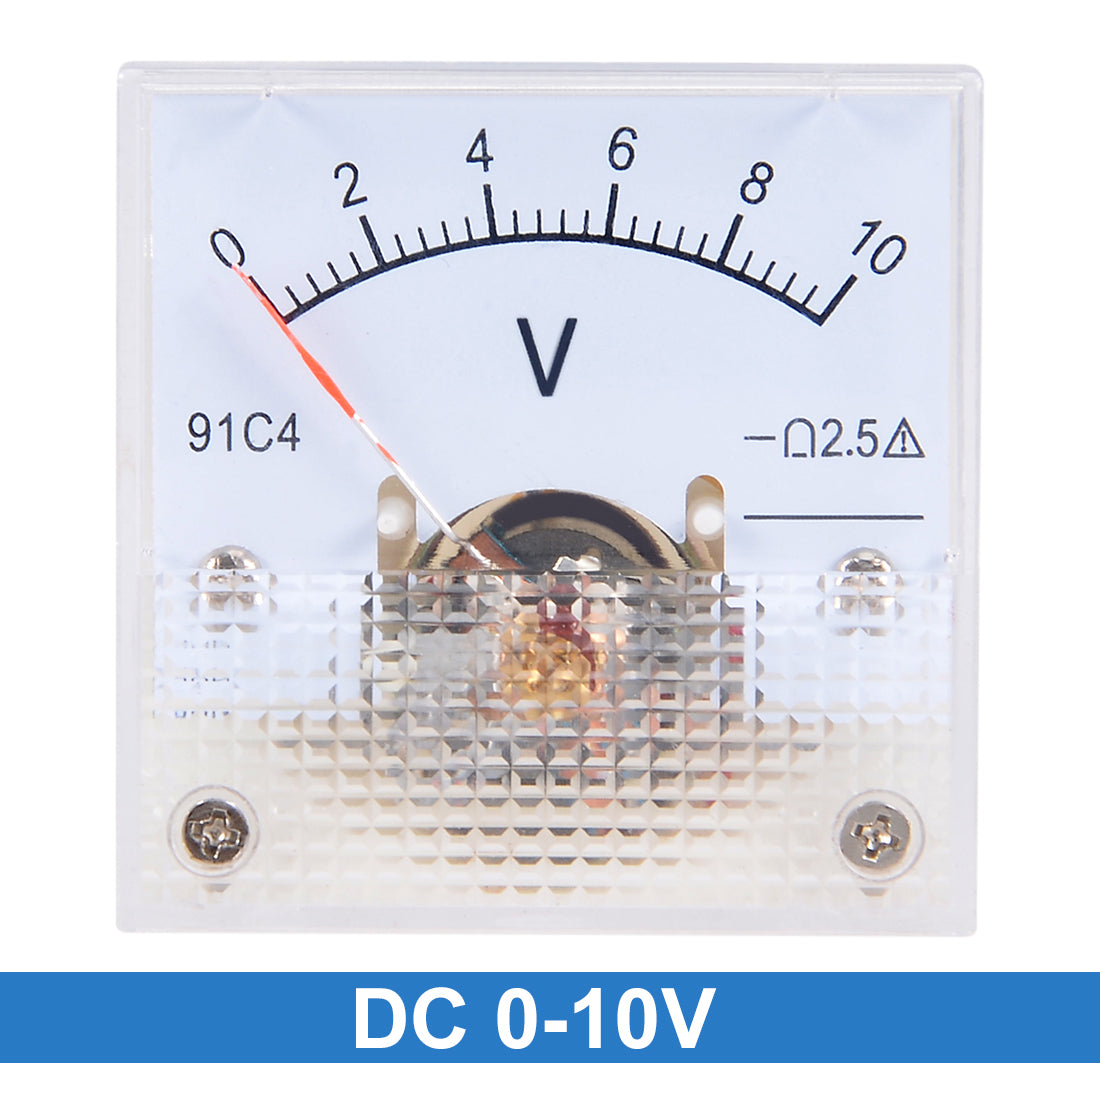 uxcell Uxcell DC 0-10V Analog Panel Voltage Gauge Volt Meter 91C4 2.5% Error Margin